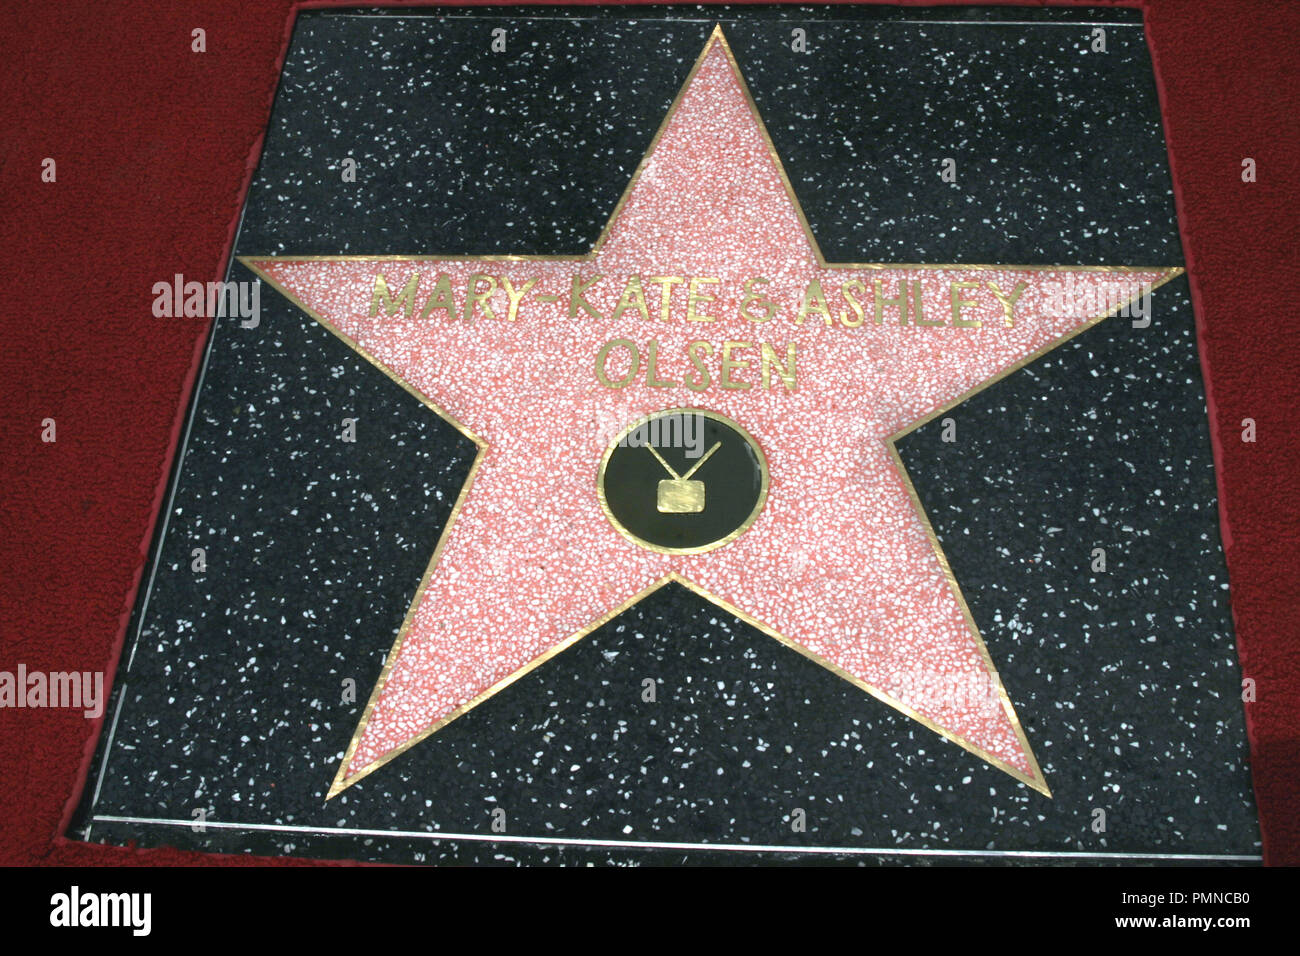 04/29/04 MARY-kate Olsen und Ashley Olsen, ausgezeichnet mit einem Stern auf dem Hollywood Walk of Fame @ Hollywood Blvd., Hollywood Foto von kazumi Nakamoto/HNW/PictureLux Datei Referenz # 31223 019 HNW nur für redaktionelle Verwendung - Alle Rechte vorbehalten Stockfoto